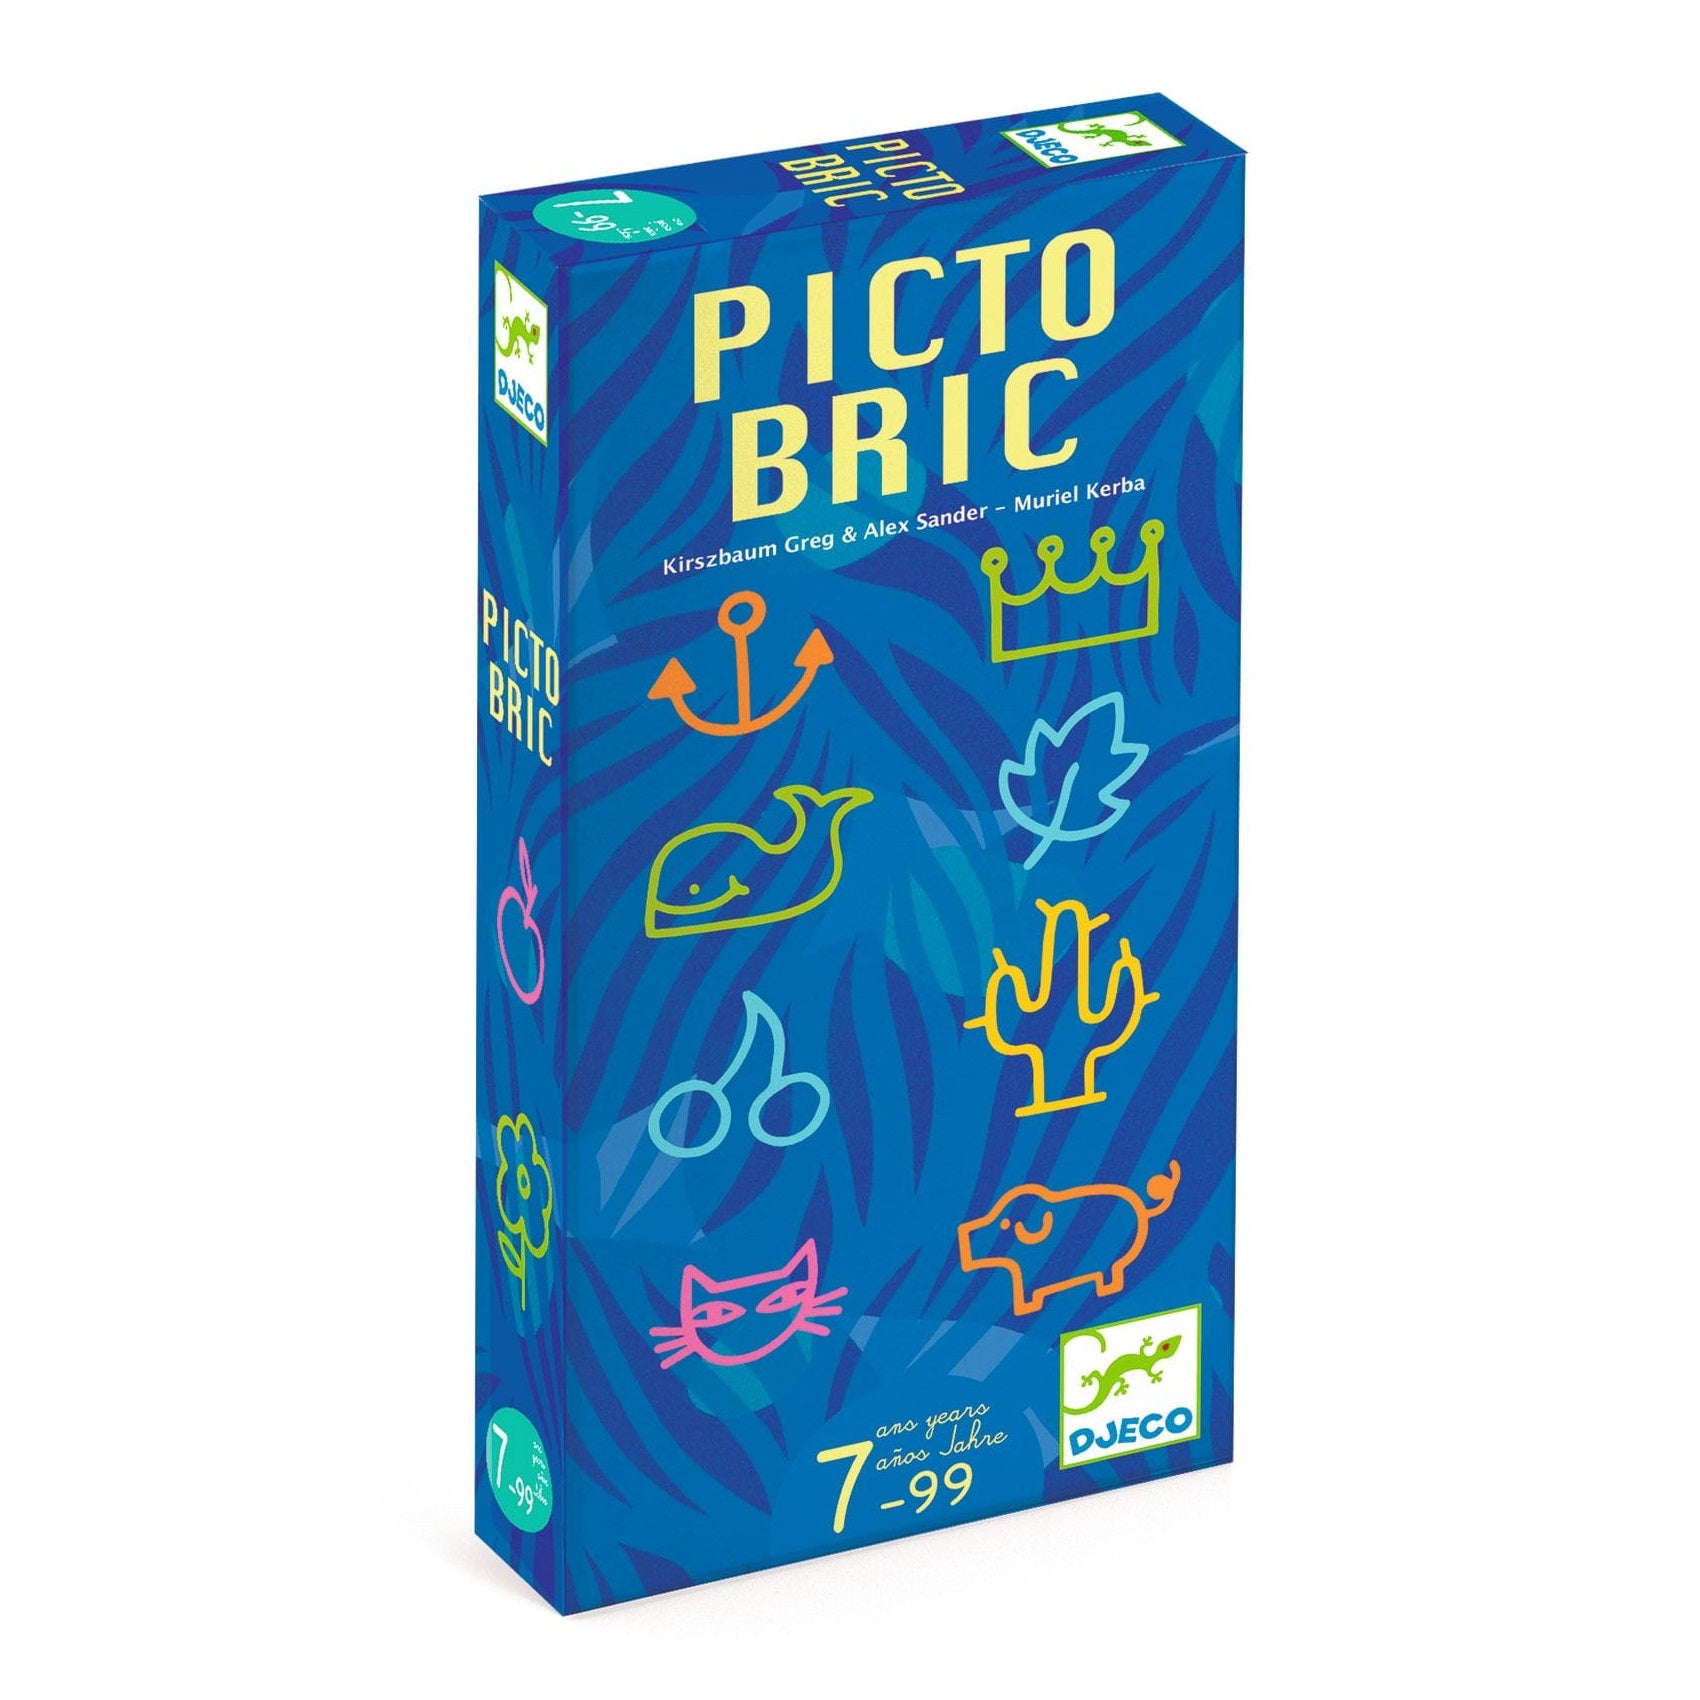 Djeco: Picto Bric Arcade -Spiel